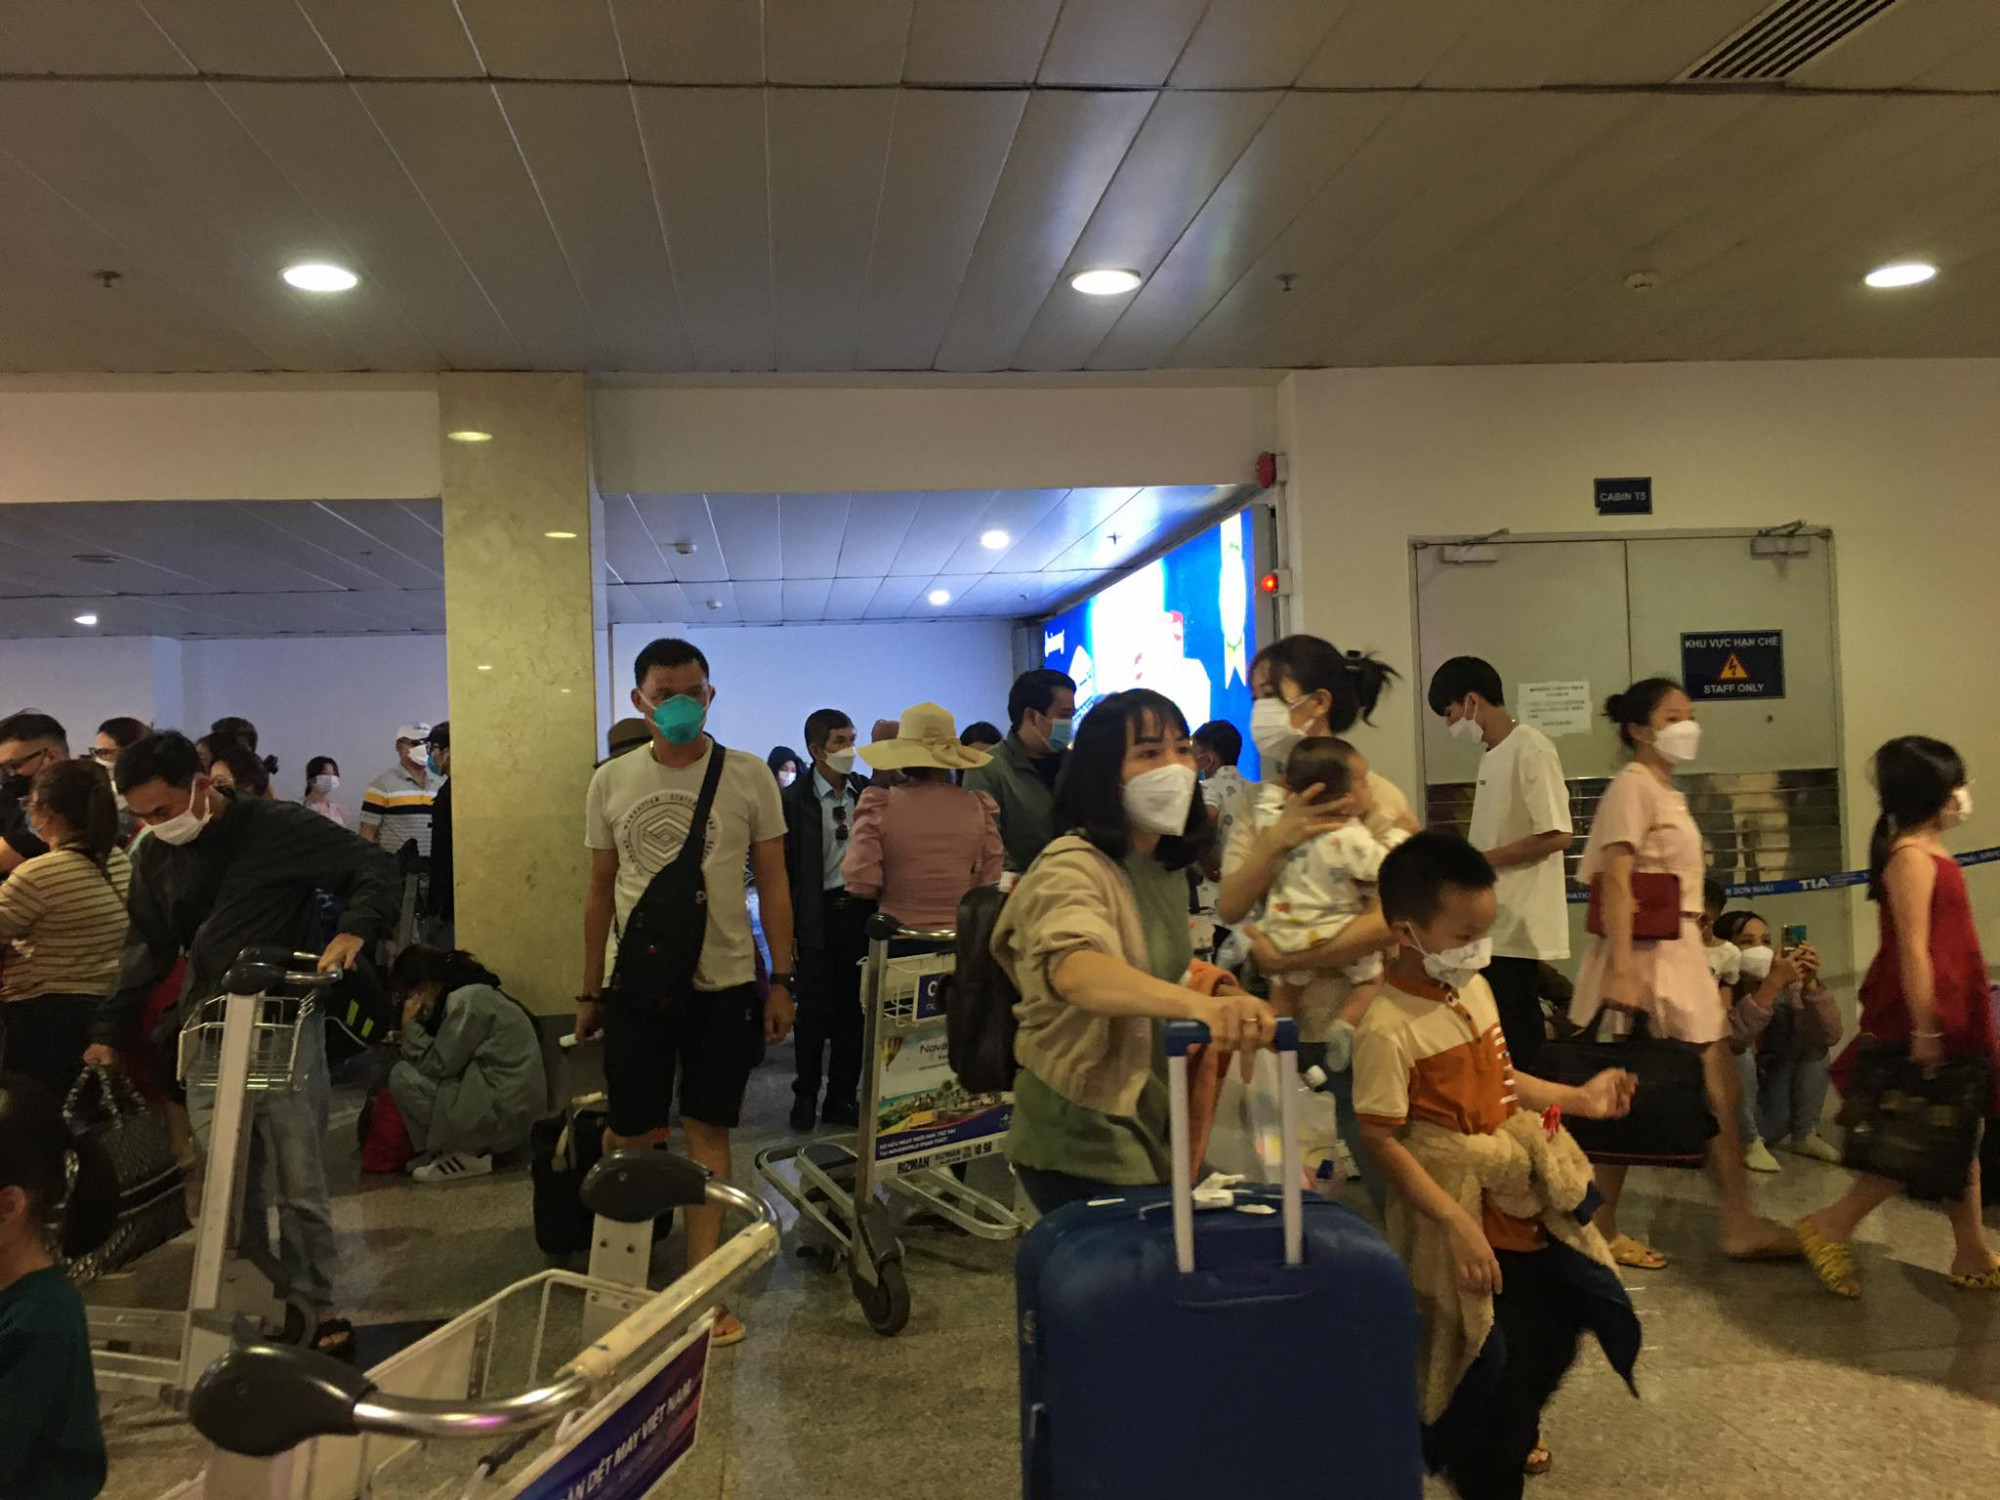 Ga nội địa, Cảng hàng không sân bay Tân Sơn Nhất trong những ngày Tết Nguyên đán thường xuyên trong cảnh đông nghẹt khách